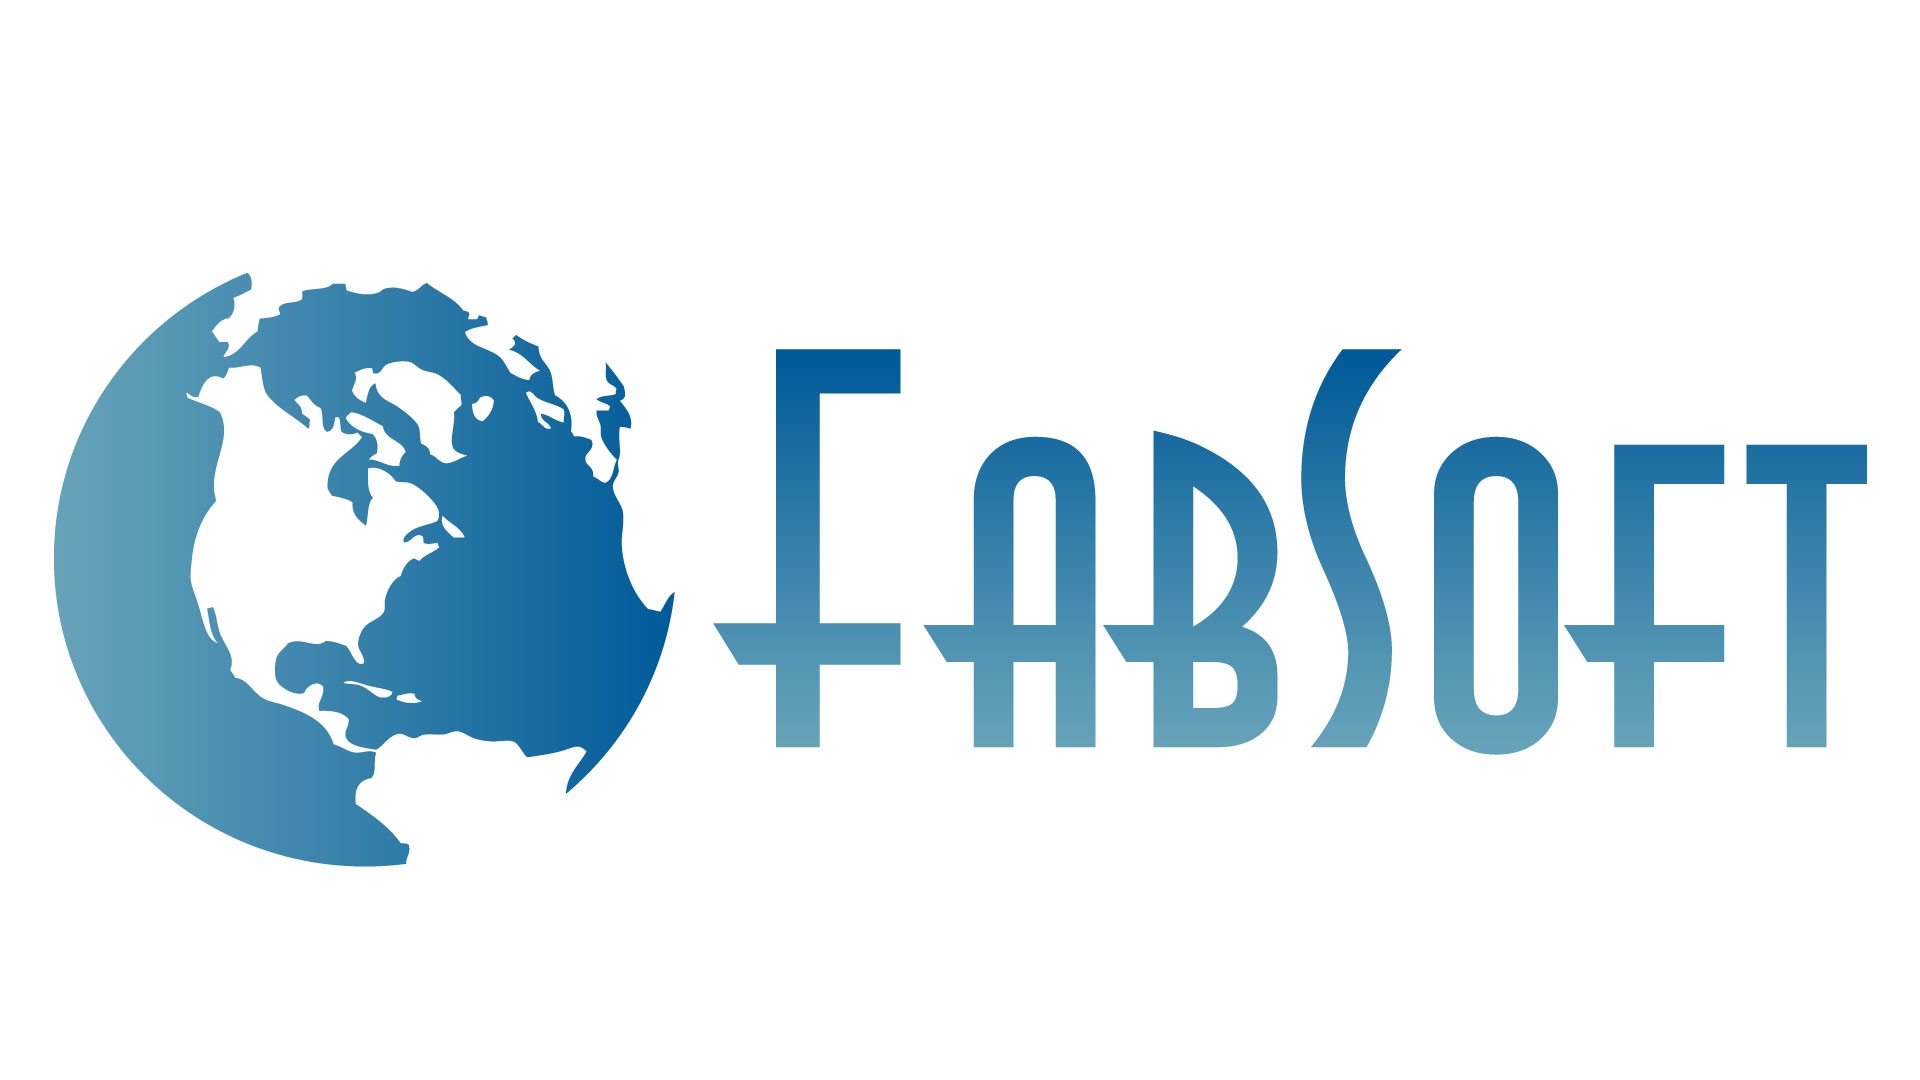 (c) Fabsoft.com